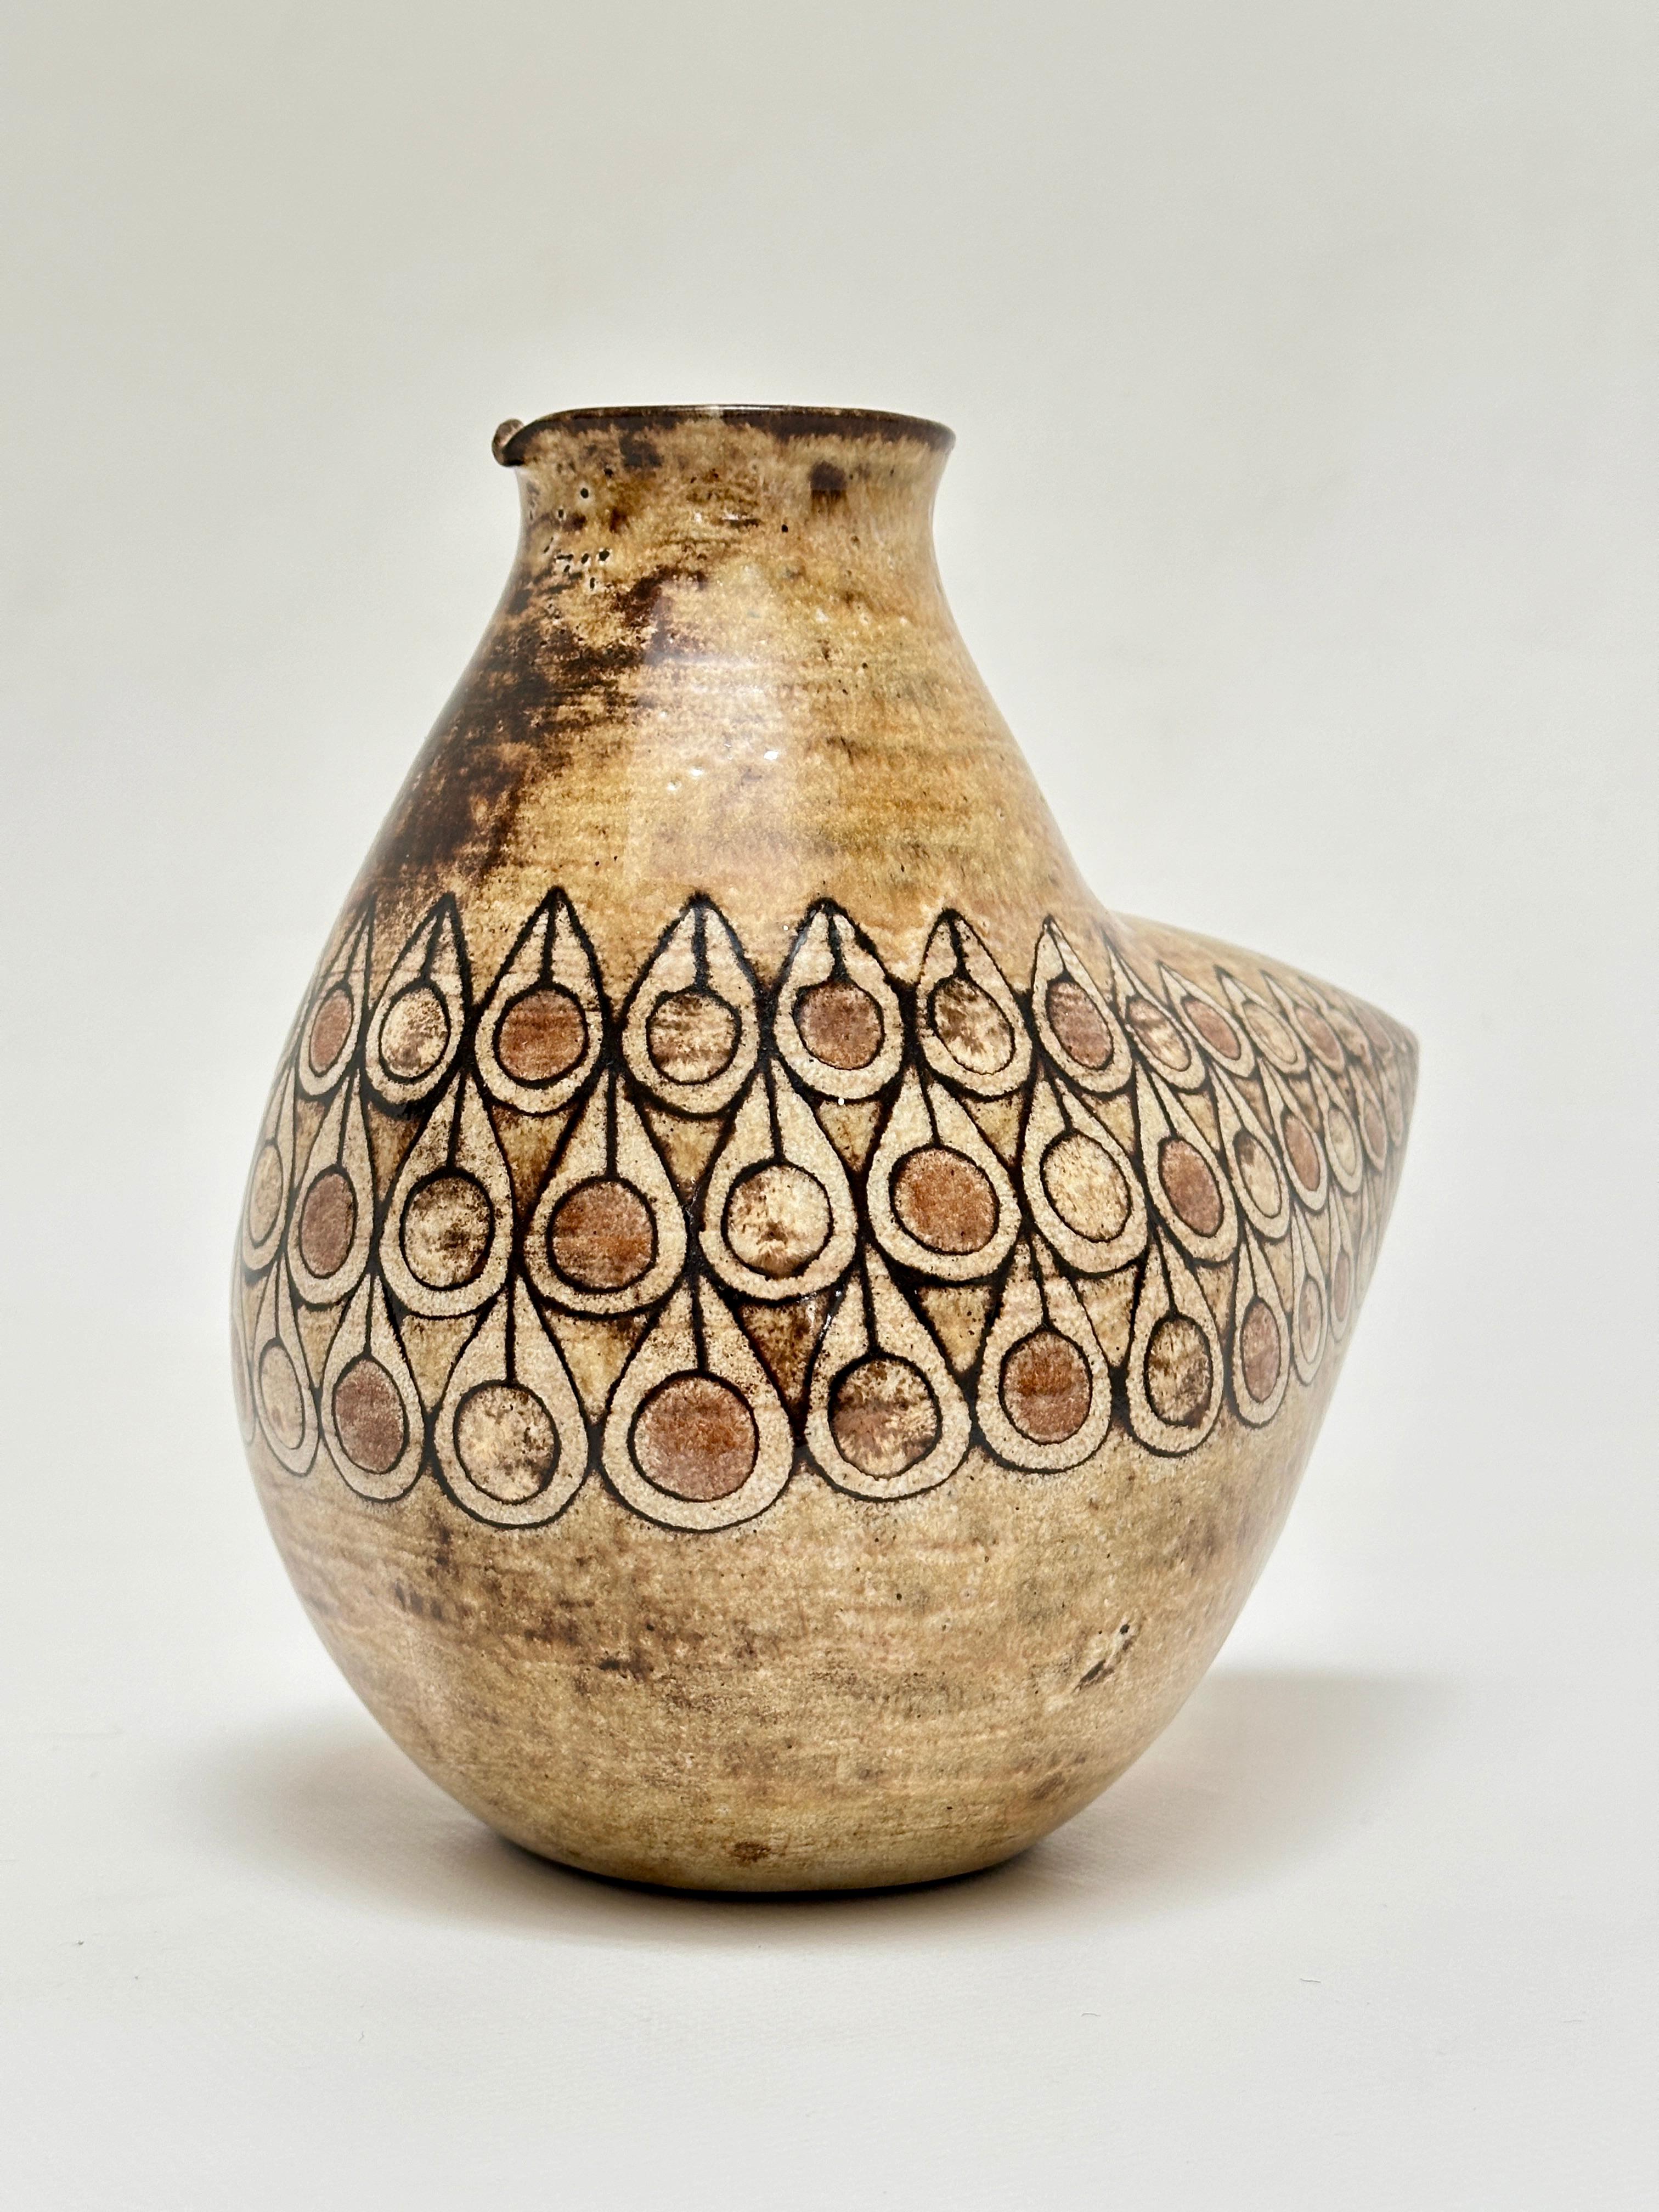 Vase in Form eines Vogels in roter Erde aus Vallauris, emailliert in gedämpften Tönen und mit Mustern, die an orientalische Zierkeramik erinnern.

Jean-Claude Malarmey, Absolvent der Ecole des Beaux Arts in Reims, schloss sich 1954 seinem